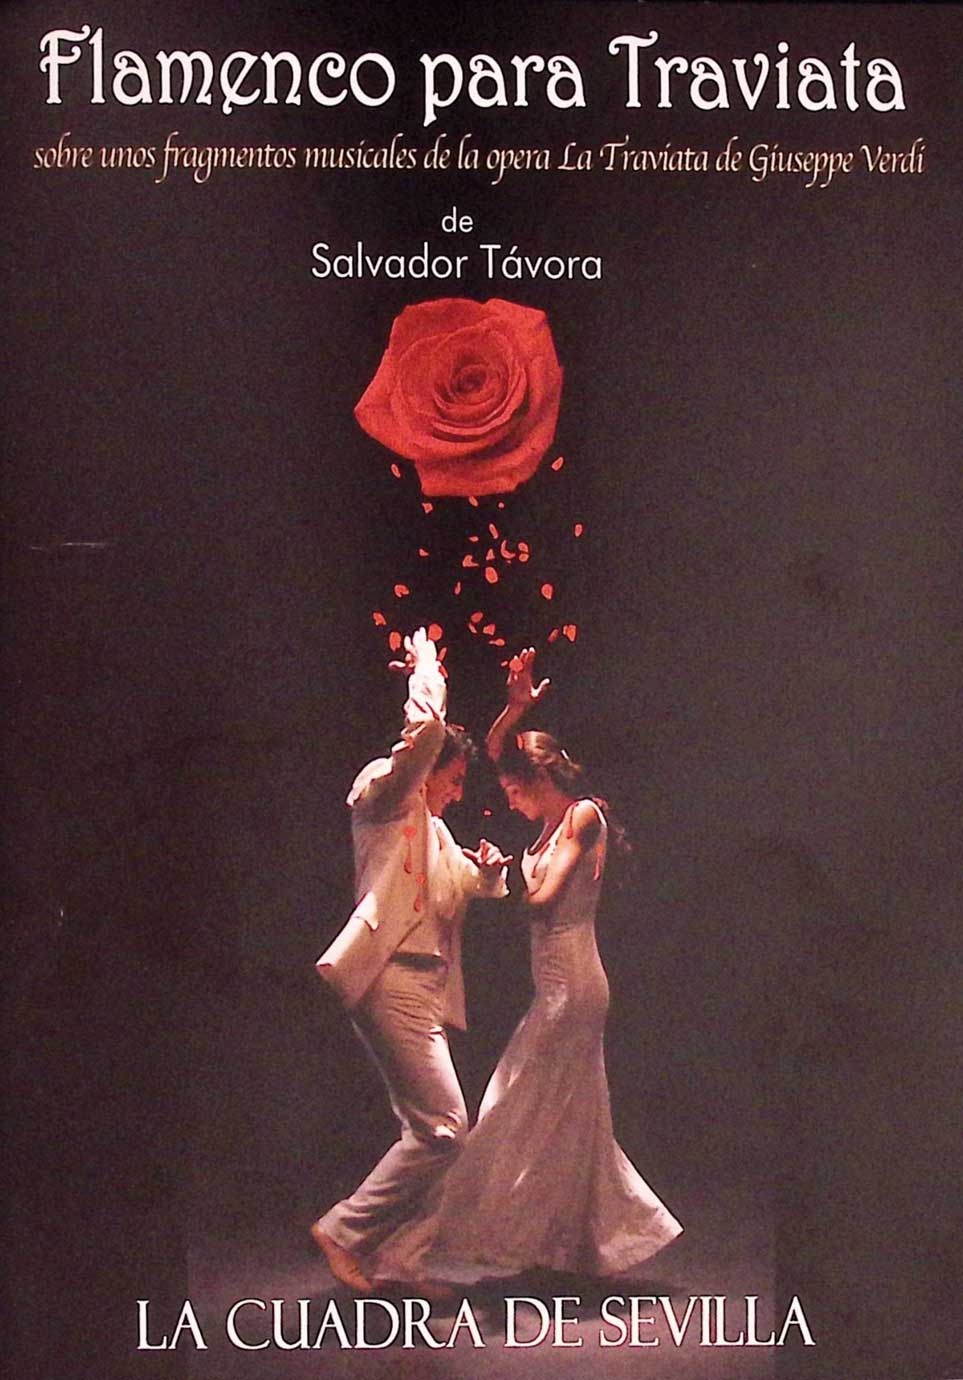 Flamenco para Traviata de Salvador Távora sobre unos fragmentos musicales de la ópera La Traviata de Giuseppe Verdi.  La Cuadra de Sevilla